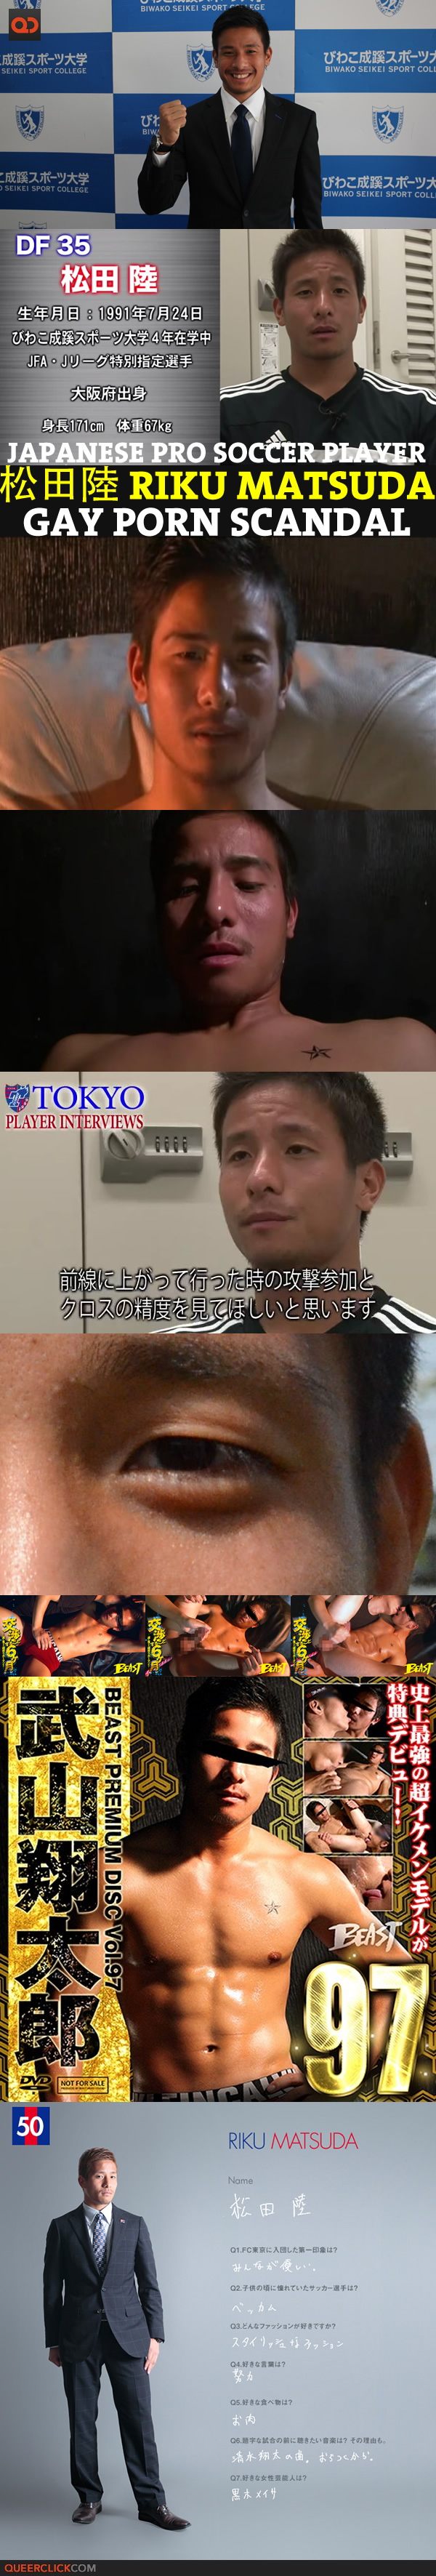 japanese pro soccer player riku matsuda gay porn scandal 1